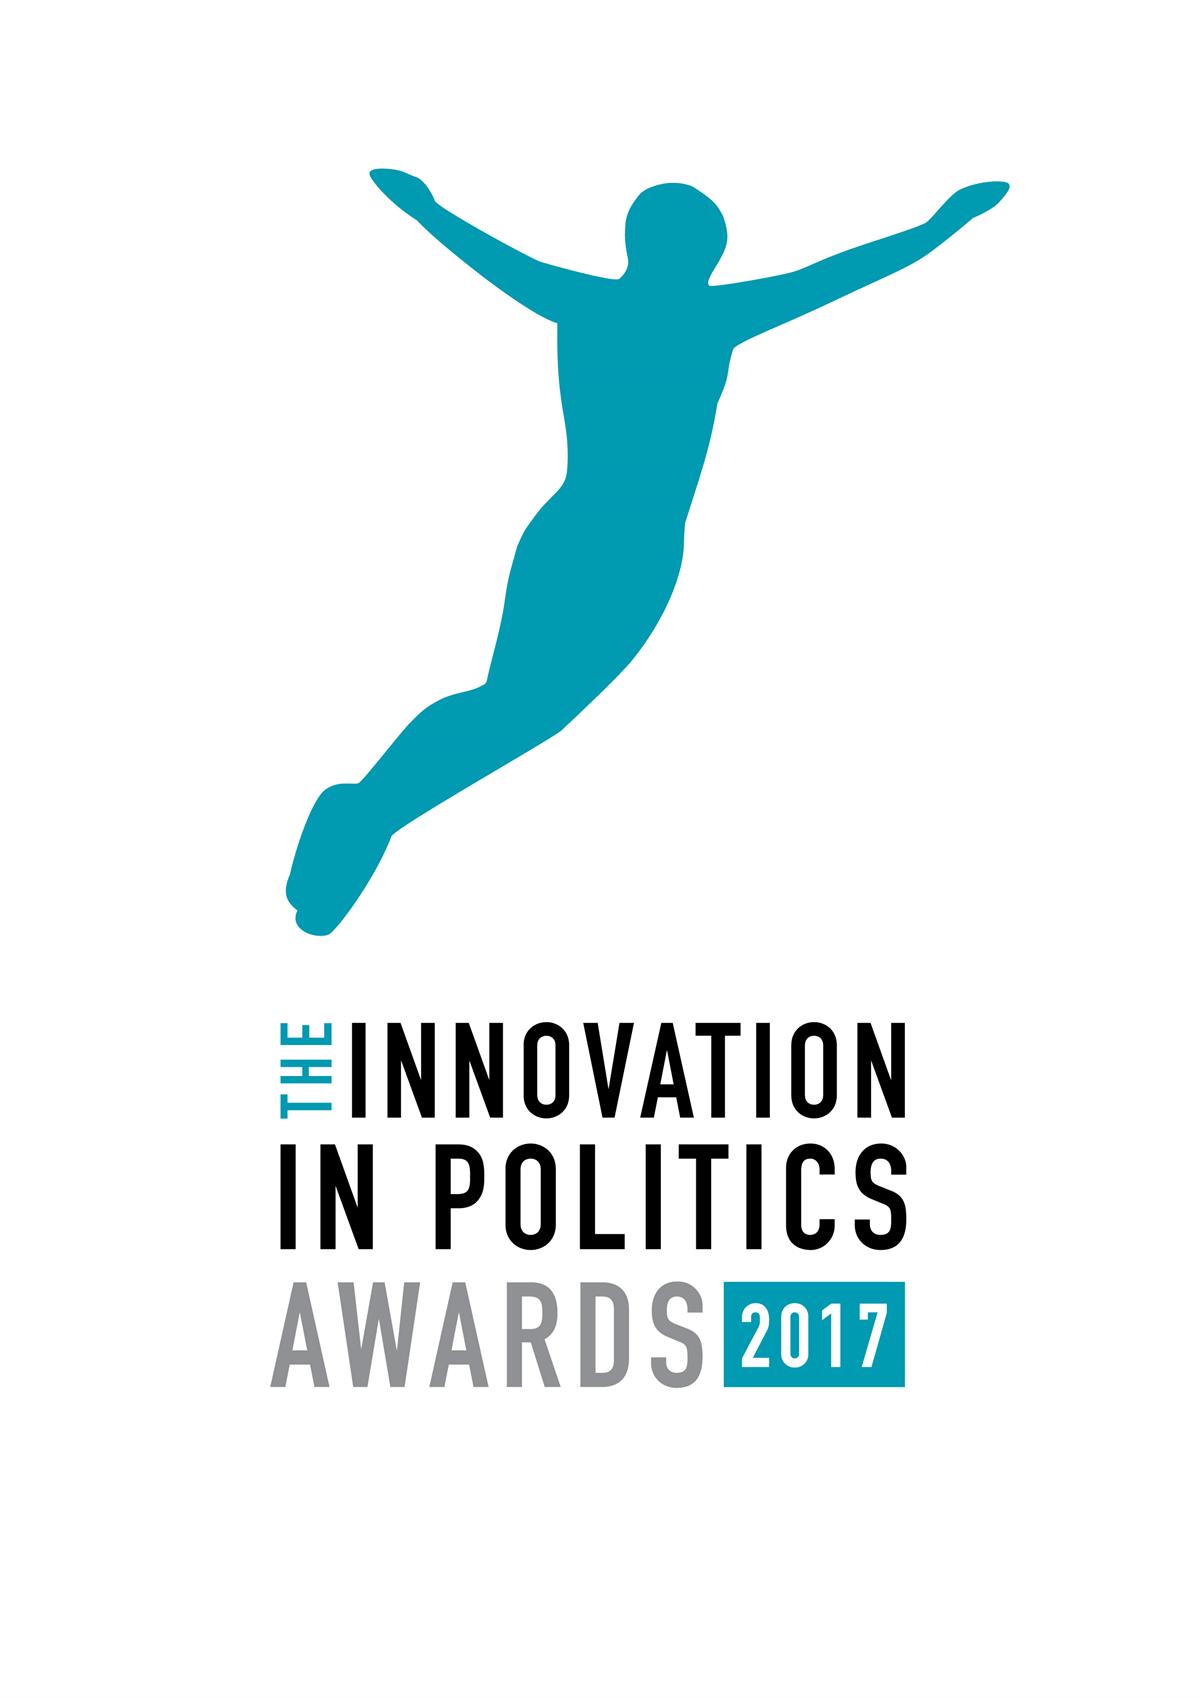 Innovation in Politics Award